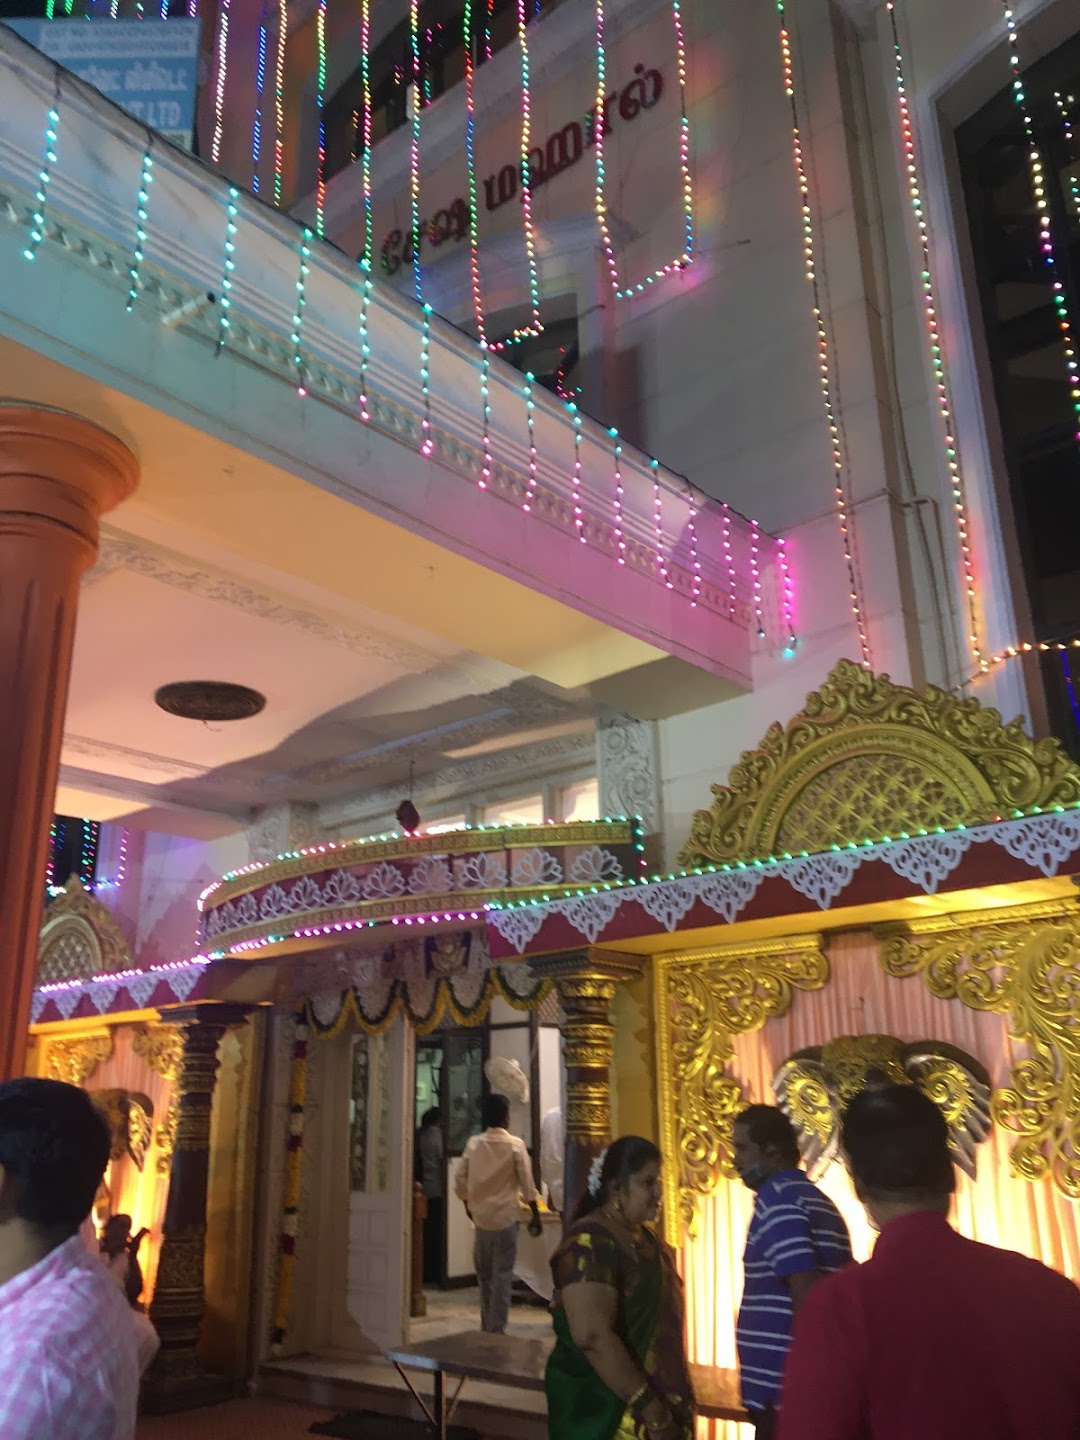 Sri Padmashree sesha Mahal